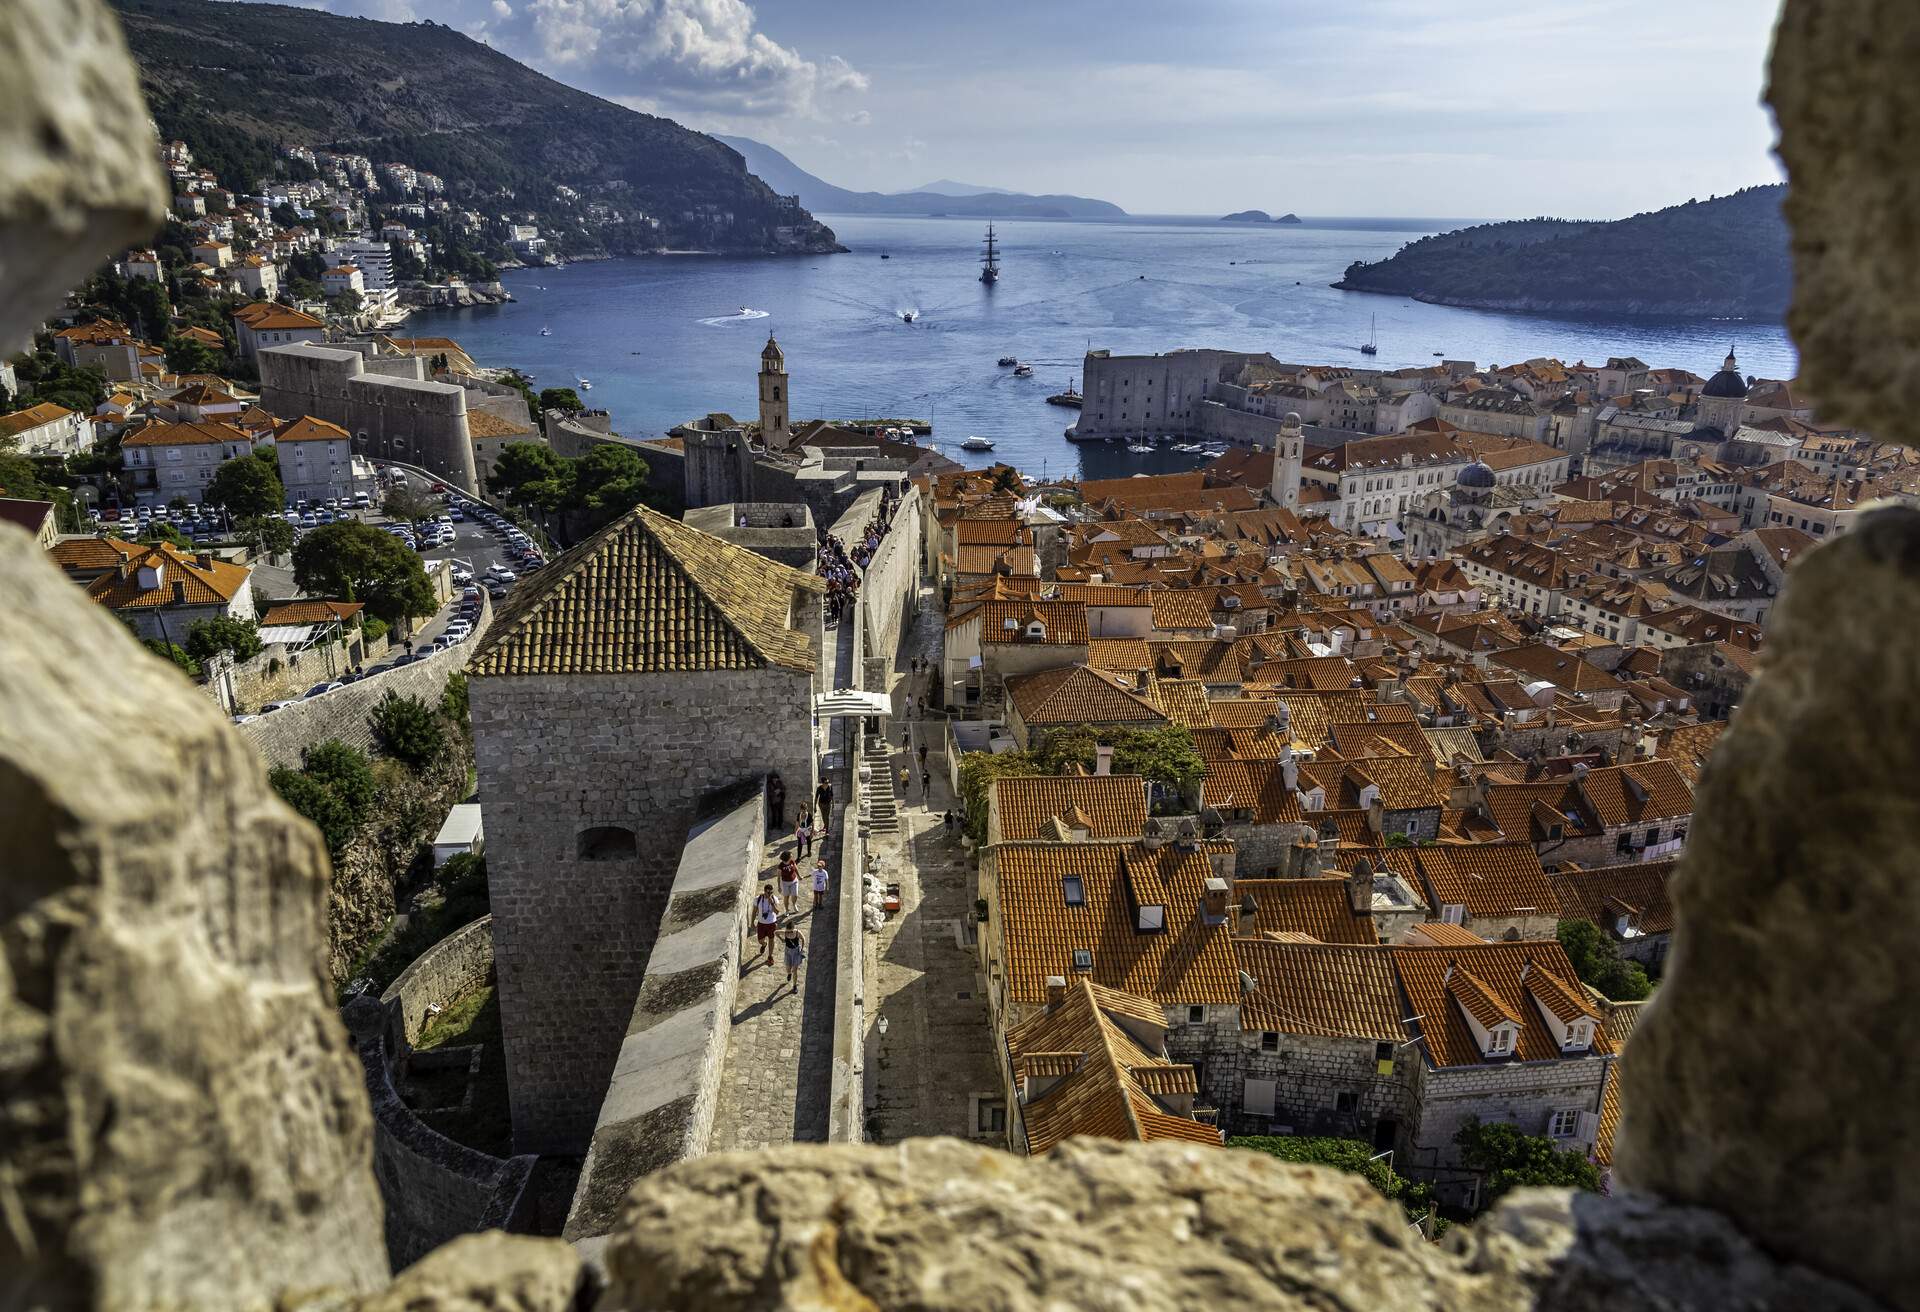 The Old City of Dubrovnik on the Dalmatian coast, Croatia